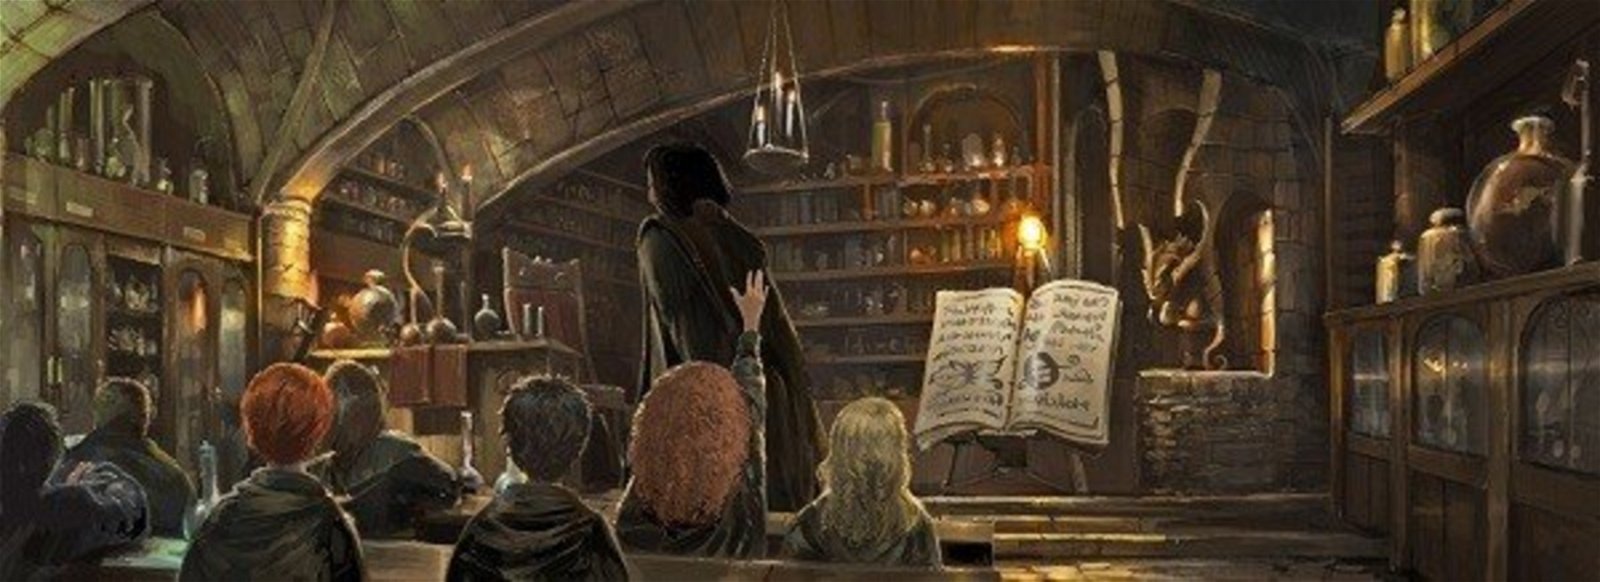 Harry Potter: Imaginan su historia protagonizada por Severus Snape